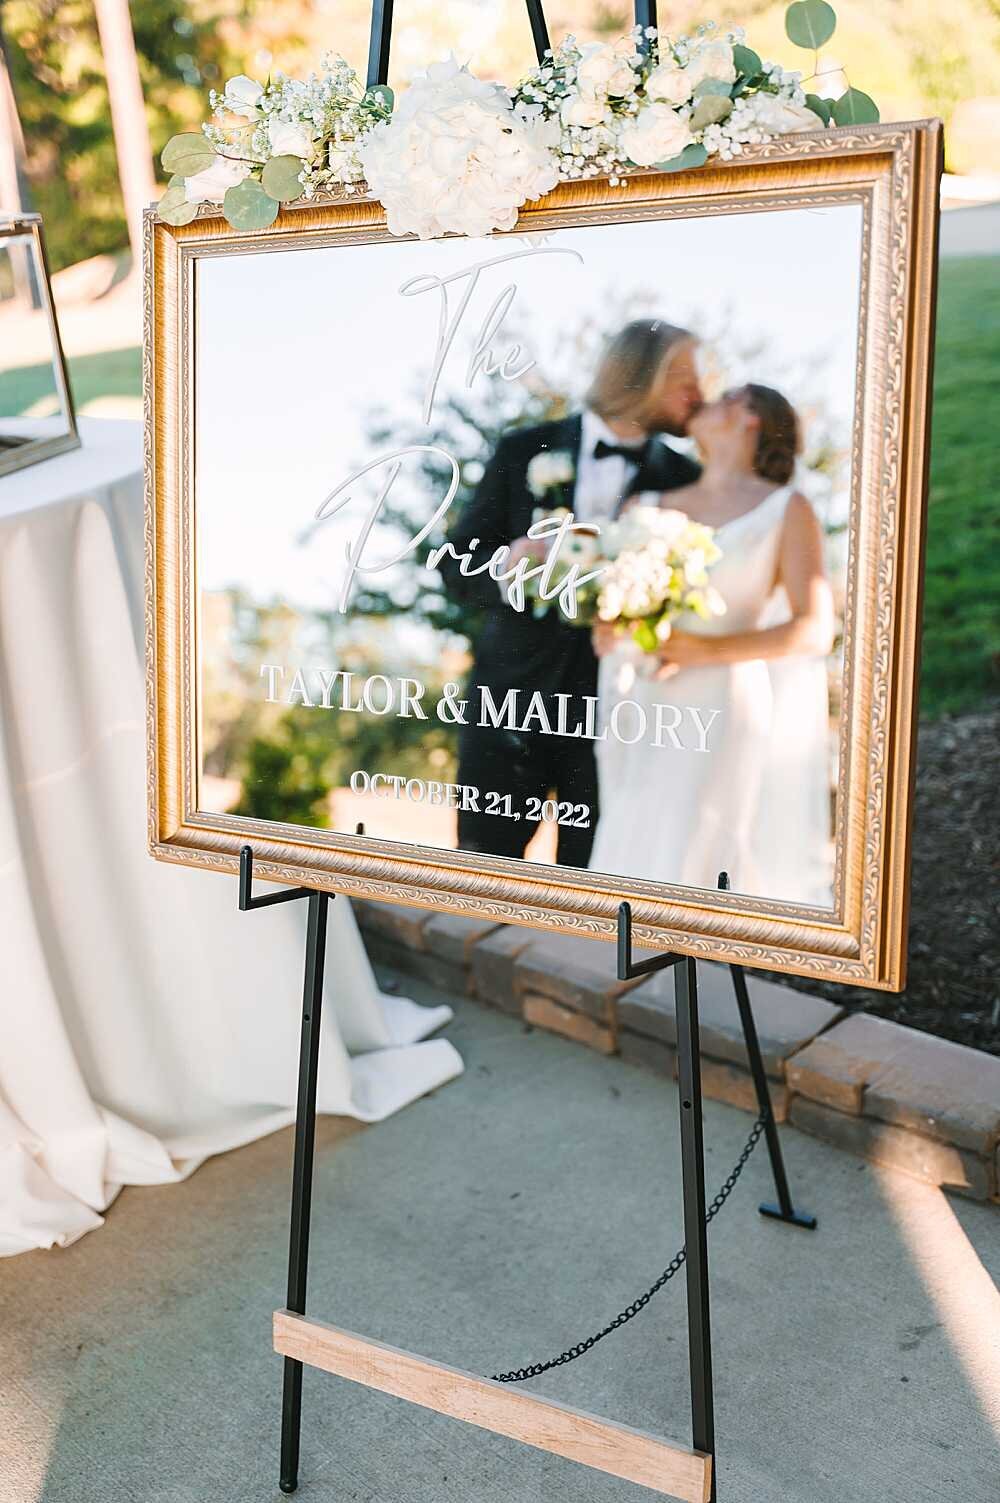 wedding sign reflection image-1